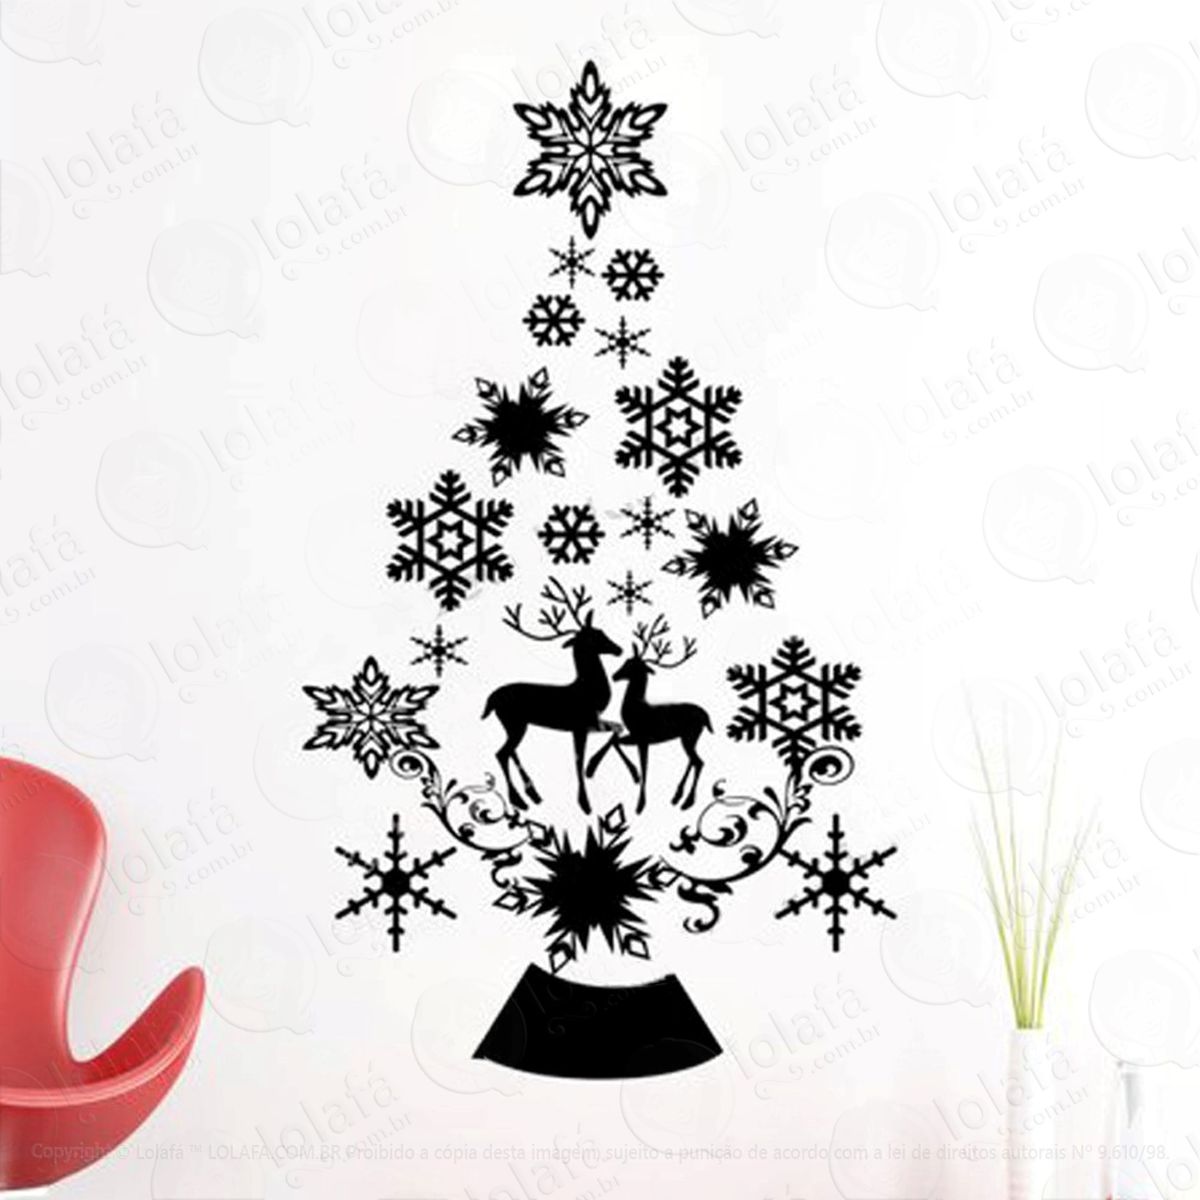 Árvore das renas adesivo de natal para vitrine, parede, porta de vidro - decoração natalina mod:22